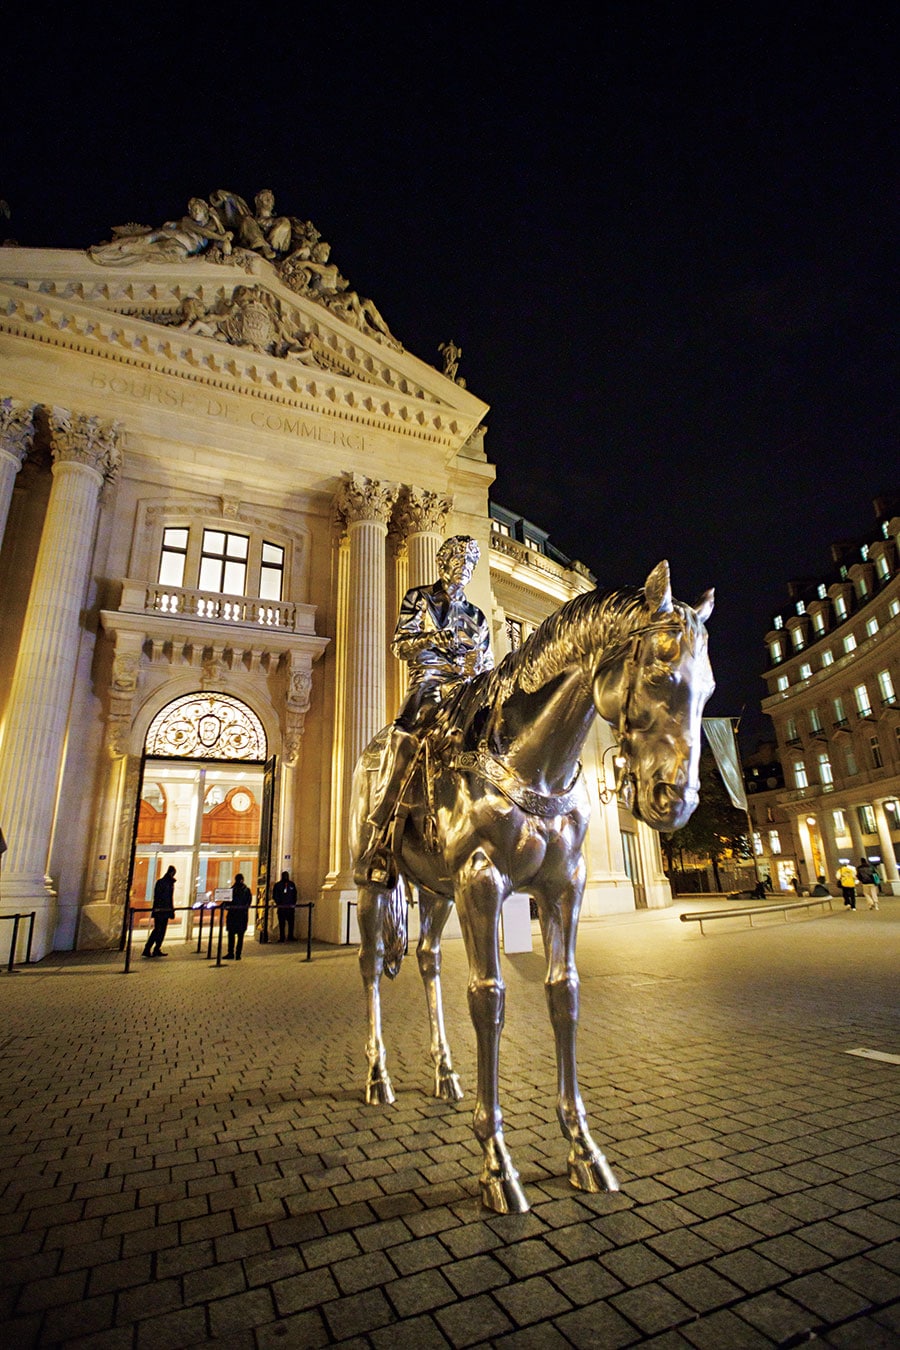 正面に展示されているアメリカ人アーティスト チャールズ・レイ氏の作品«馬と騎手»。夜はとりわけ、シルバーの存在感が増す。